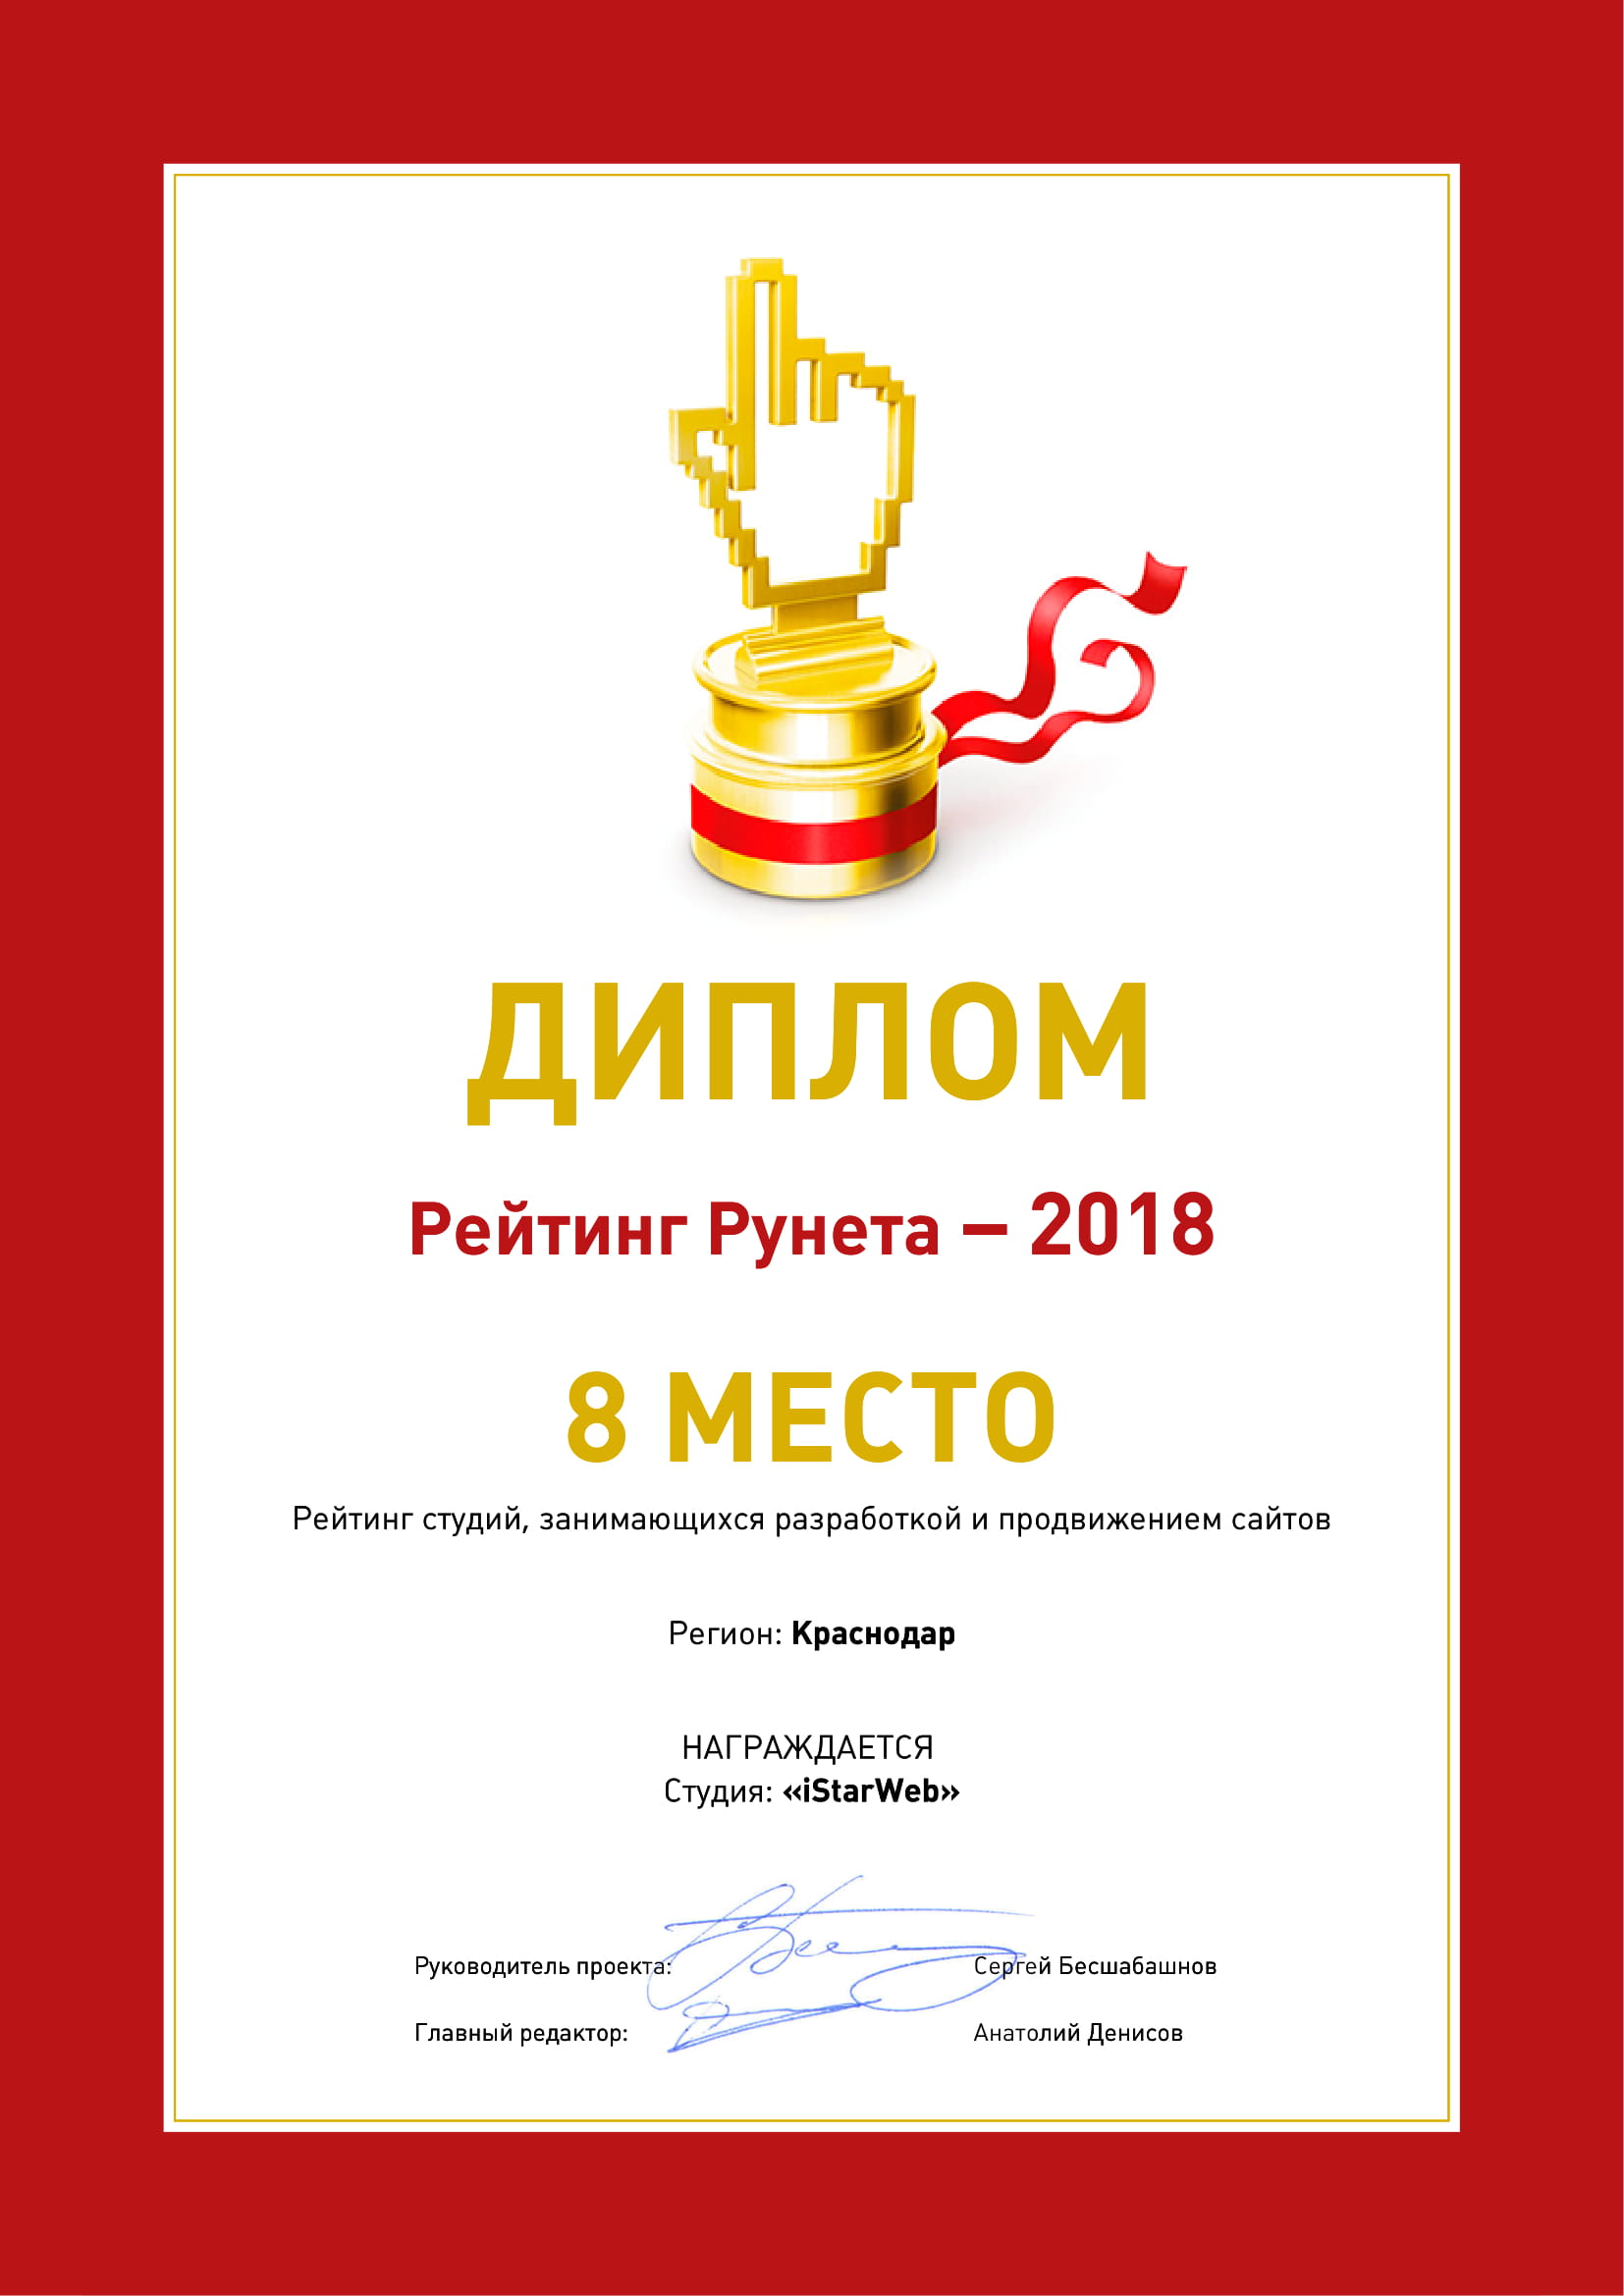 Рейтинг Рунета - Димплом, 8 место